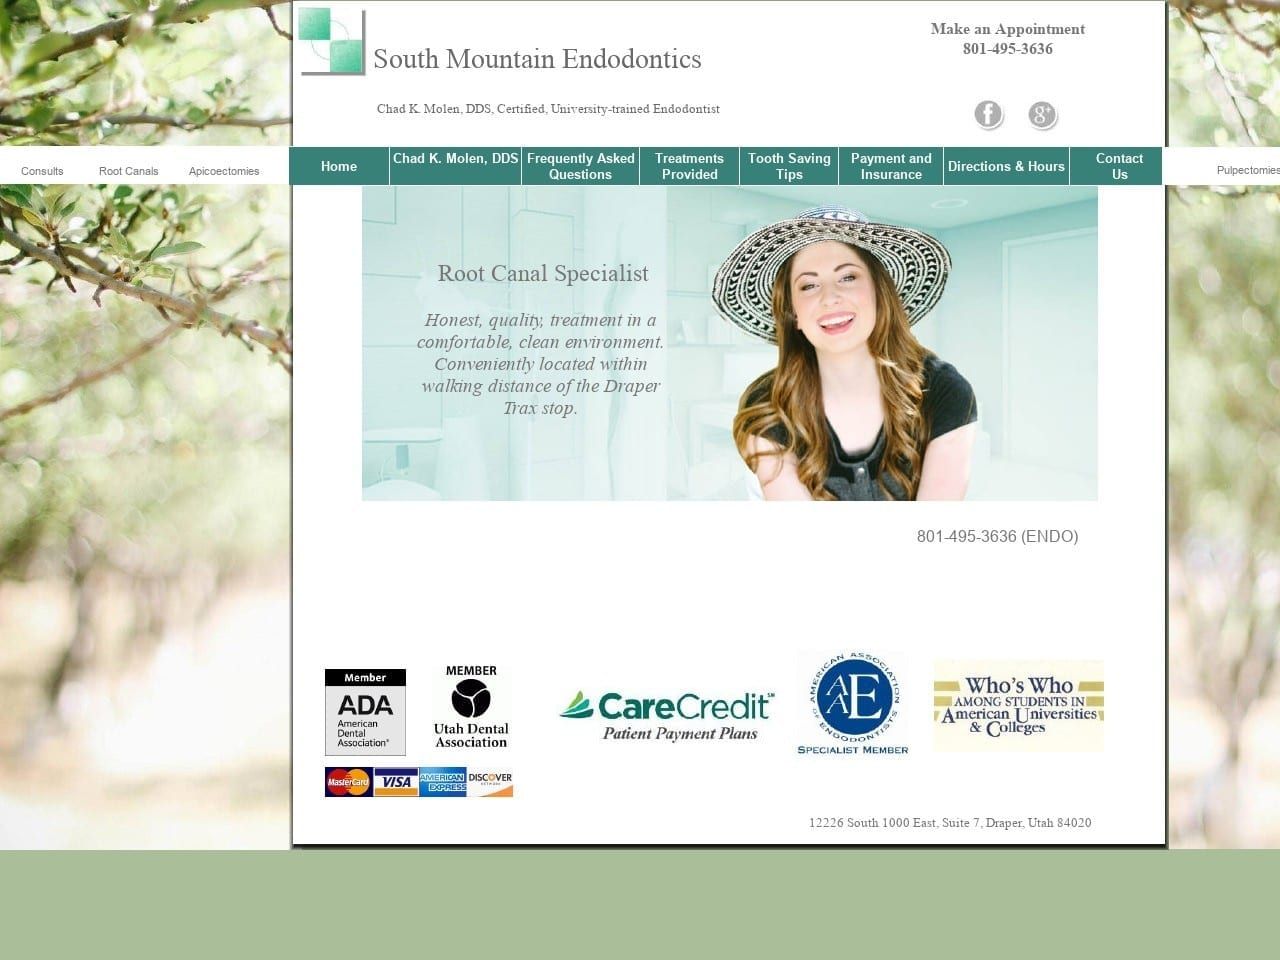 South Mountain Endodontics Website Screenshot from southmountainendo.com